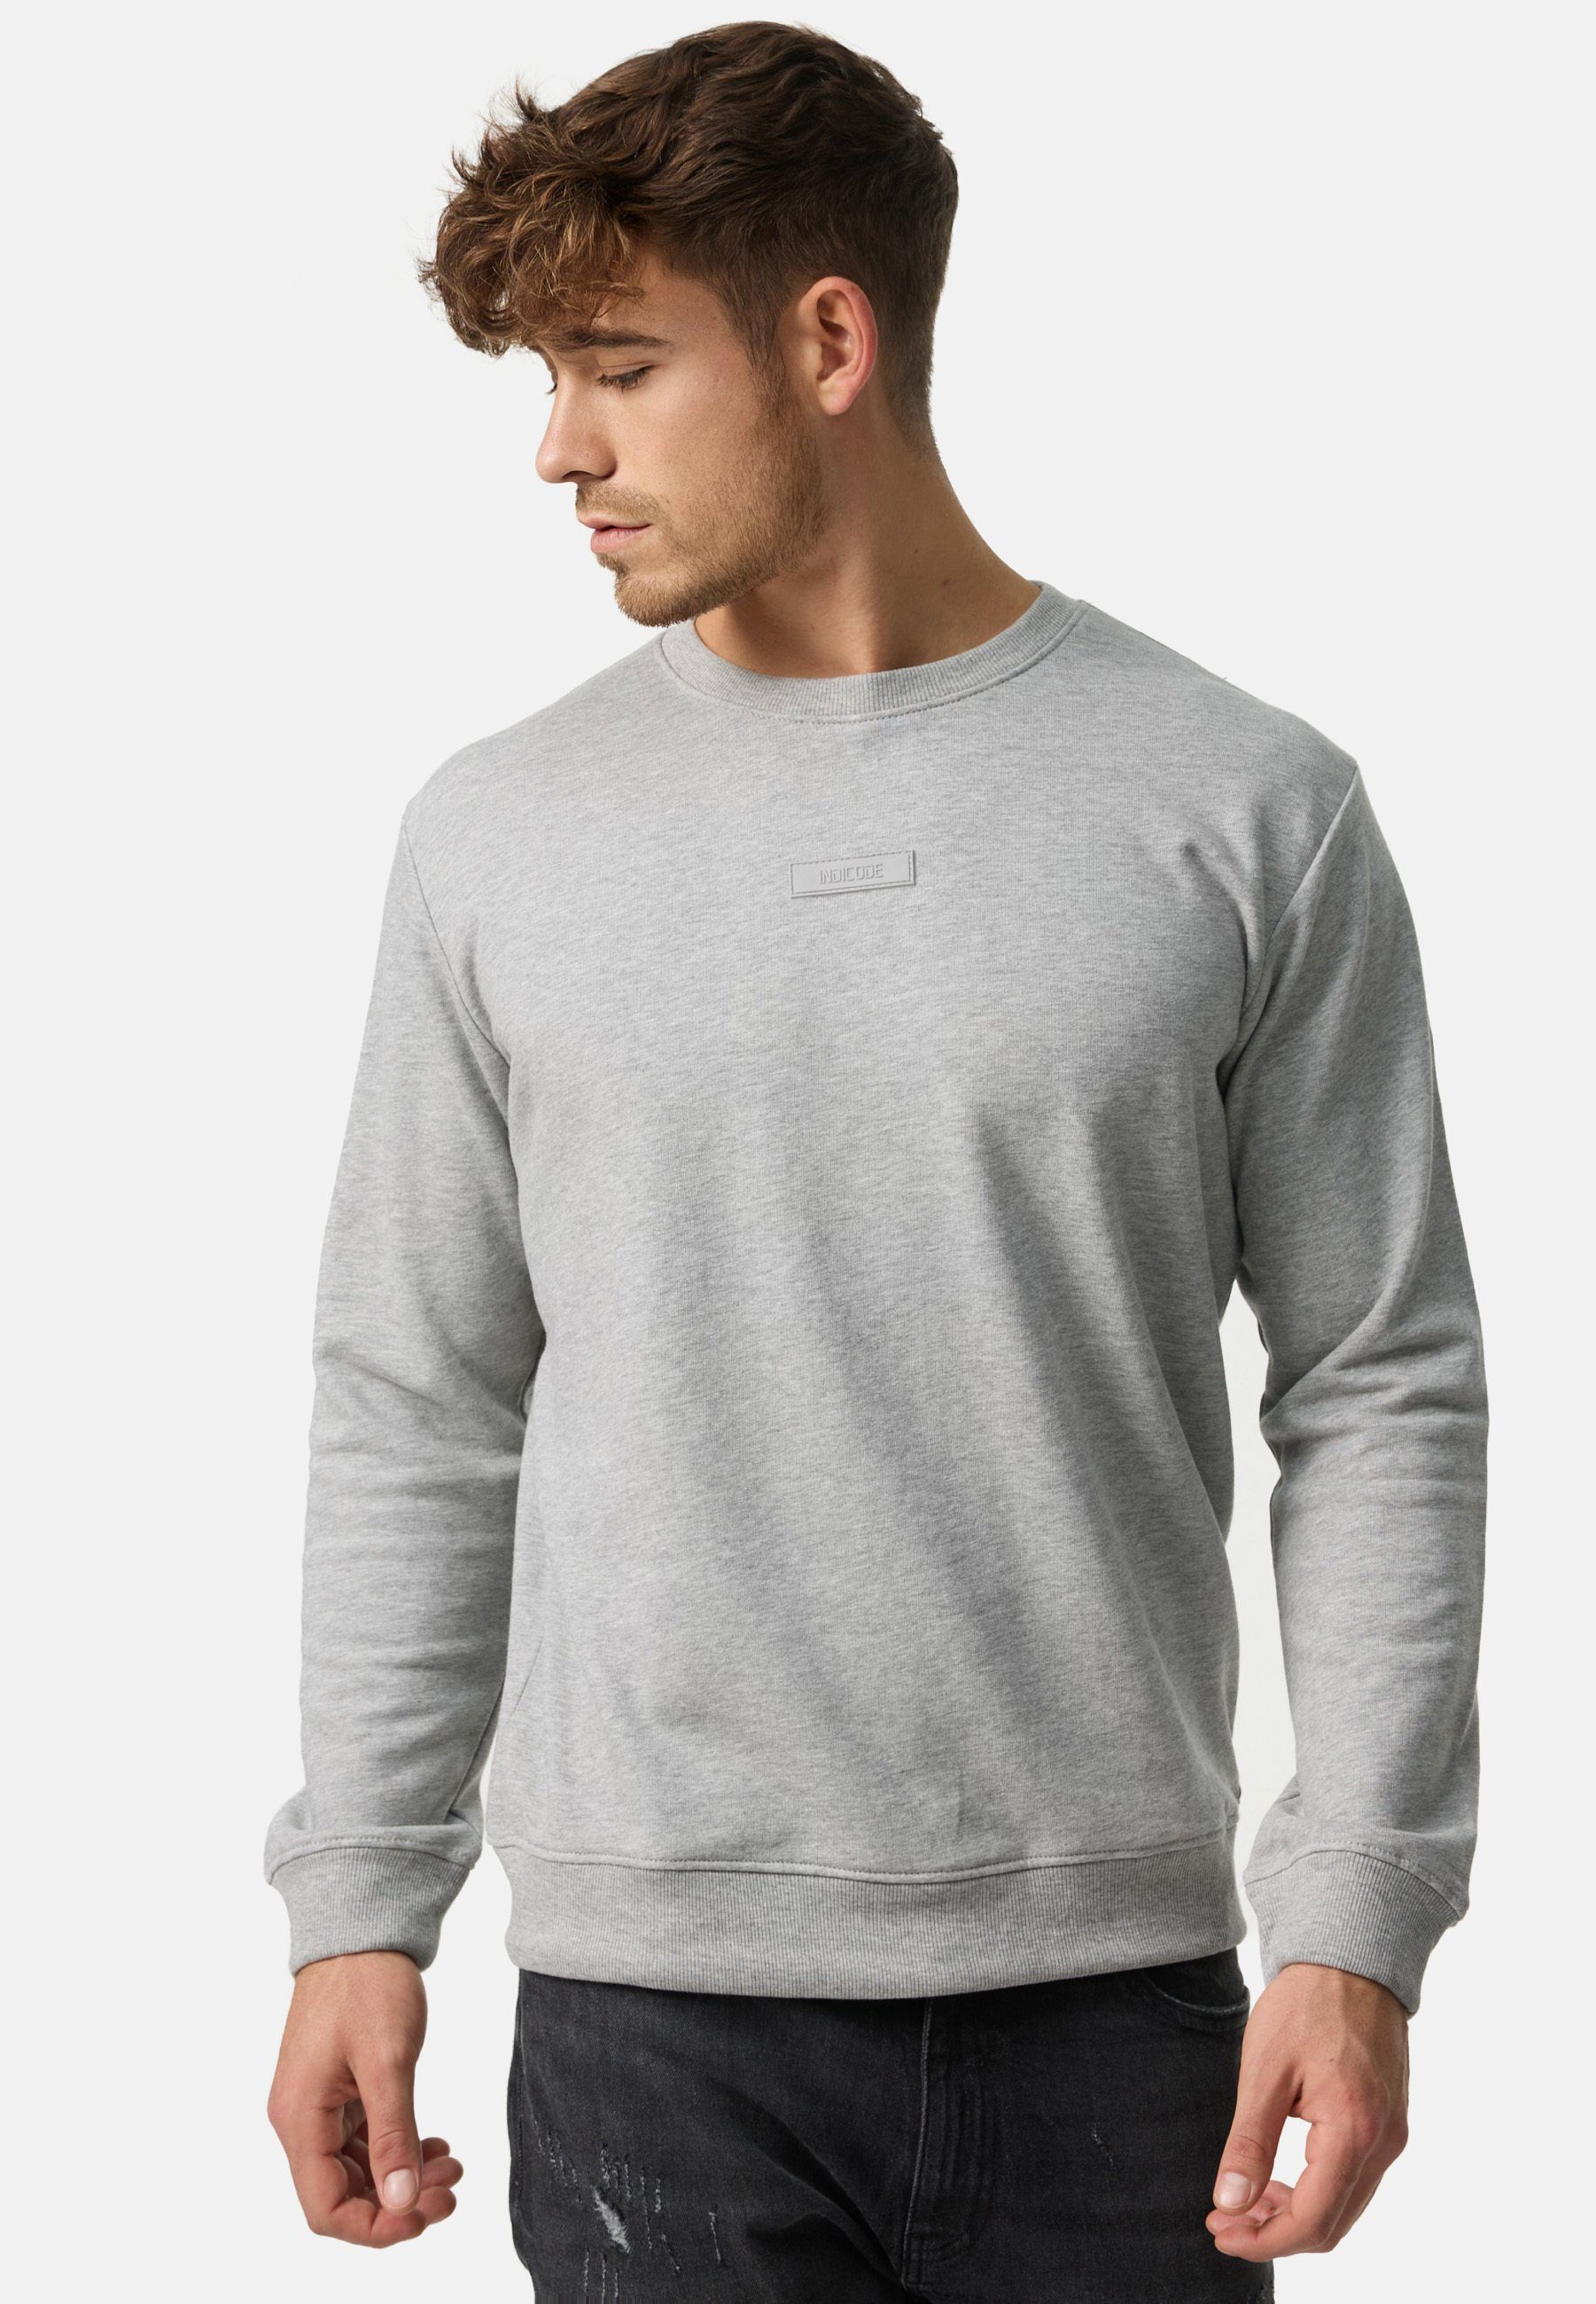 Sweater Grey Lt Indicode Baxter Mix